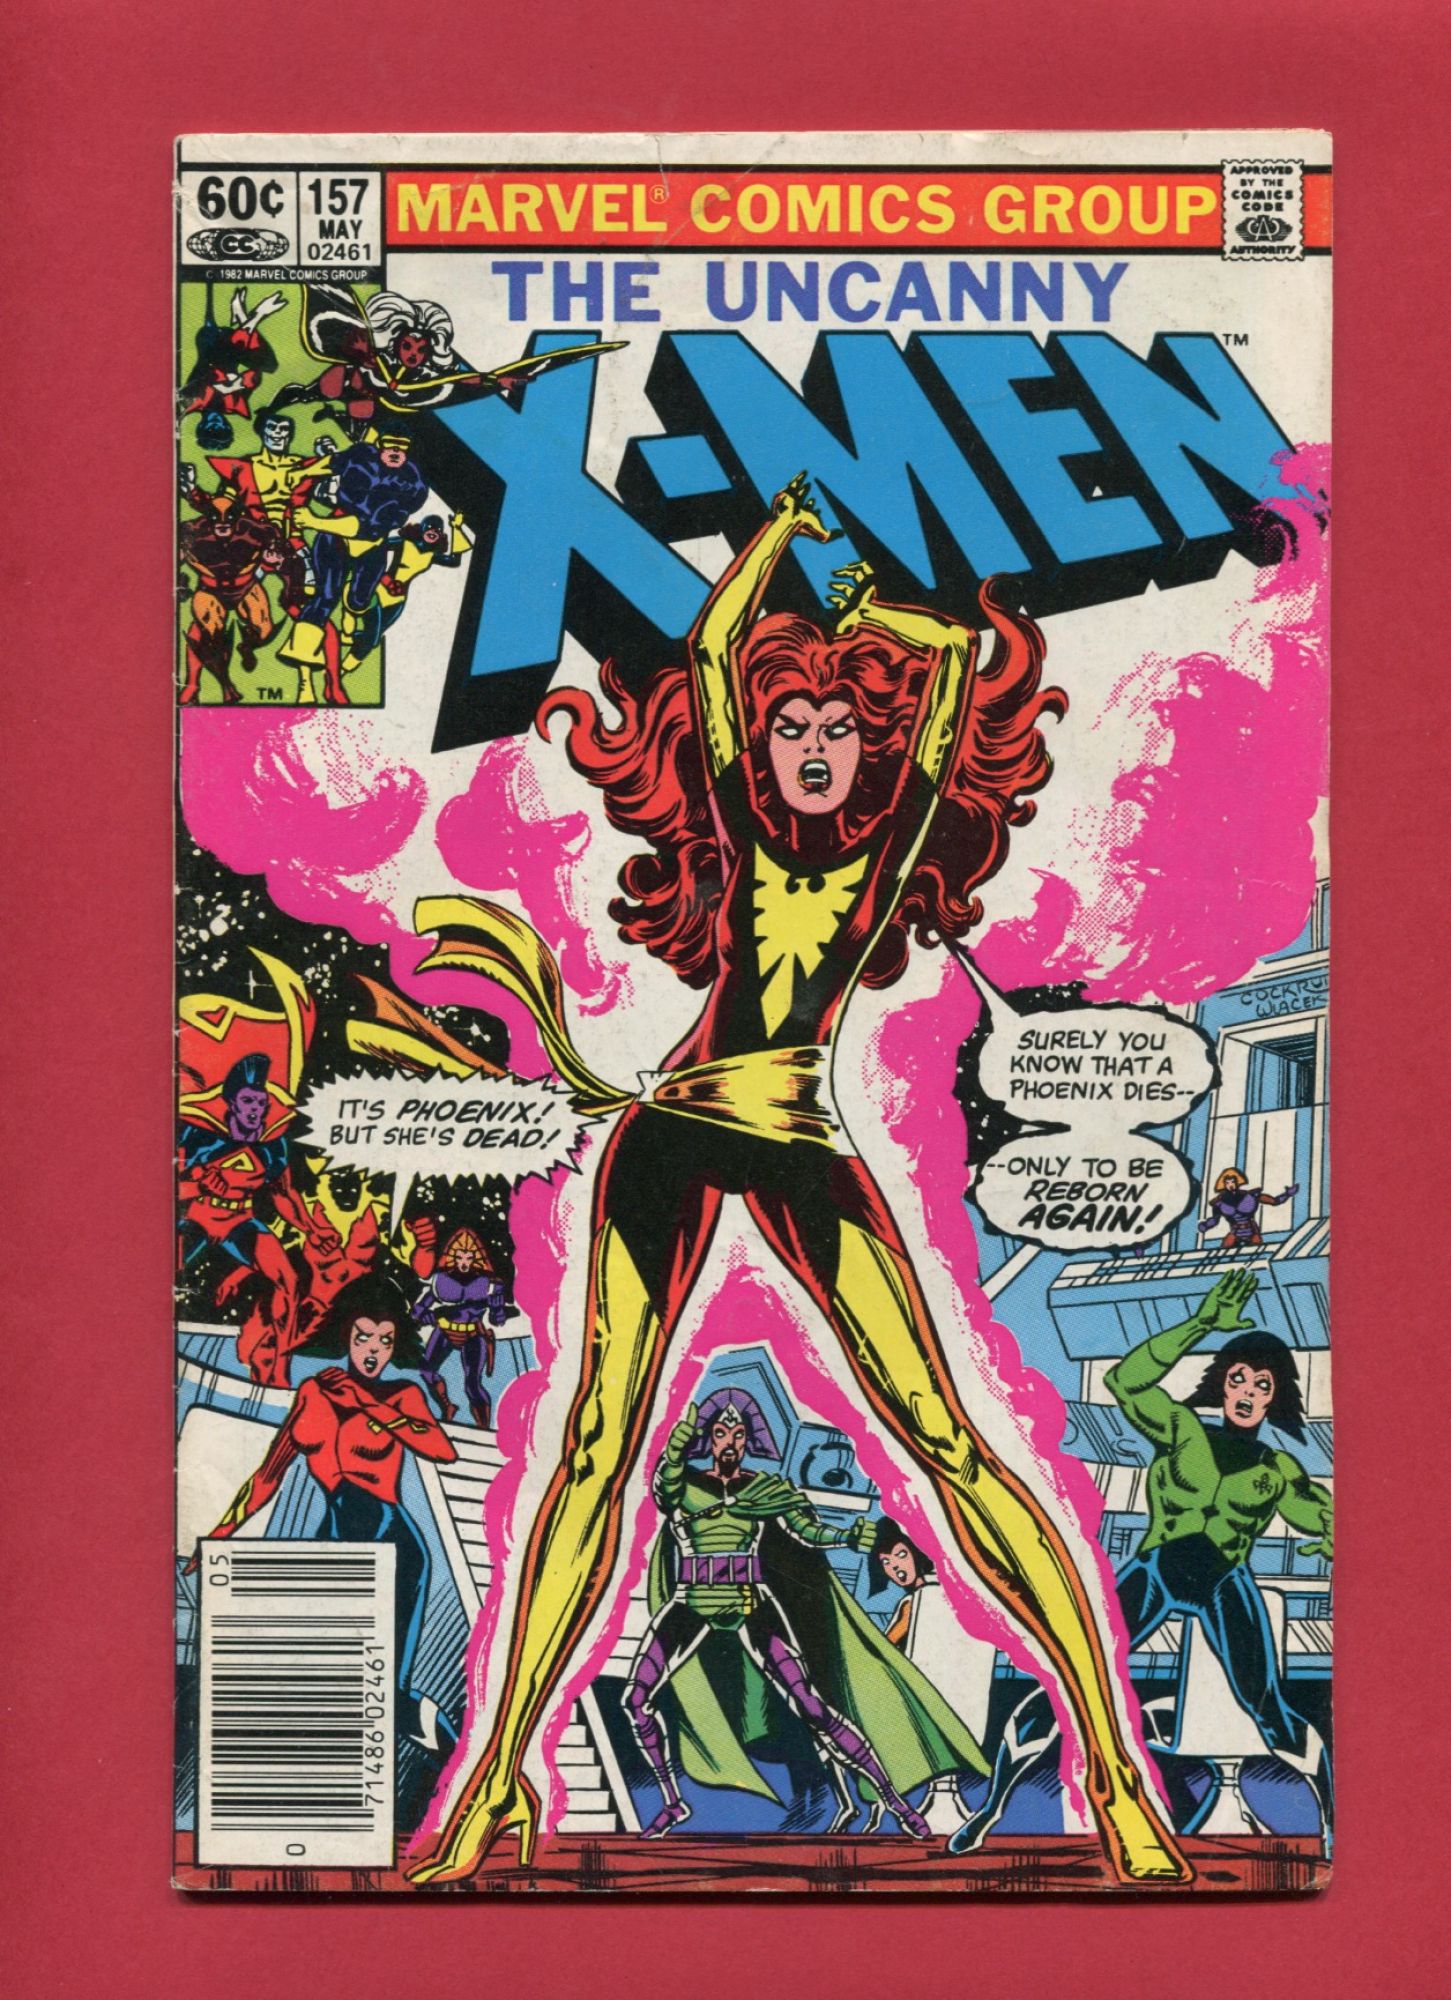 Uncanny X-Men (Volume 1 1963) #157, May 1982, Marvel :: Iconic Comics ...